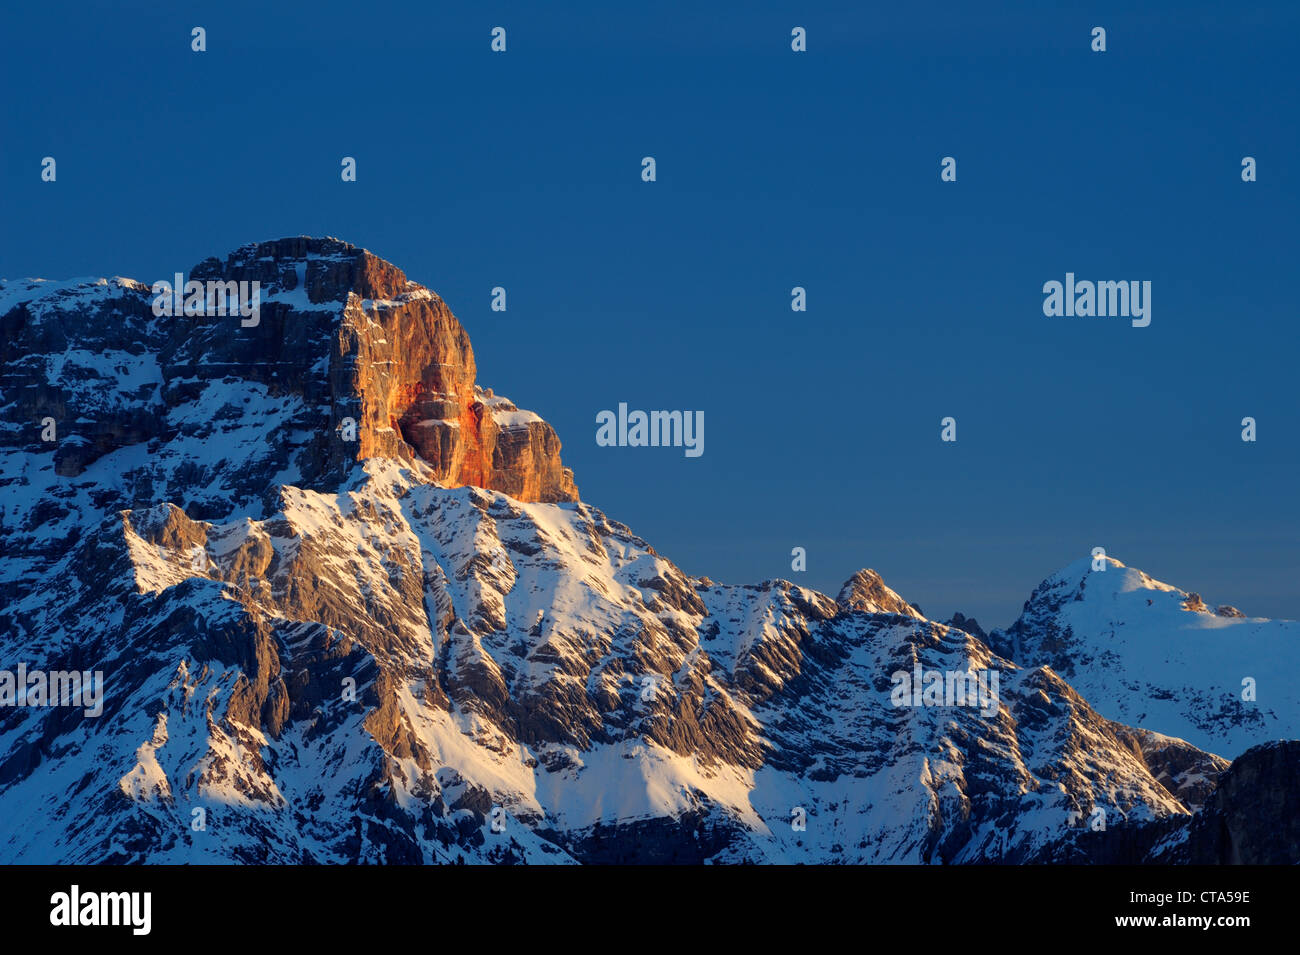 Felswand der Hohe Gaisl im ersten Licht, Cortina d' Ampezzo, UNESCO World Heritage Site Dolomiten, Dolomiten, Venetien, Italien Eur Stockfoto